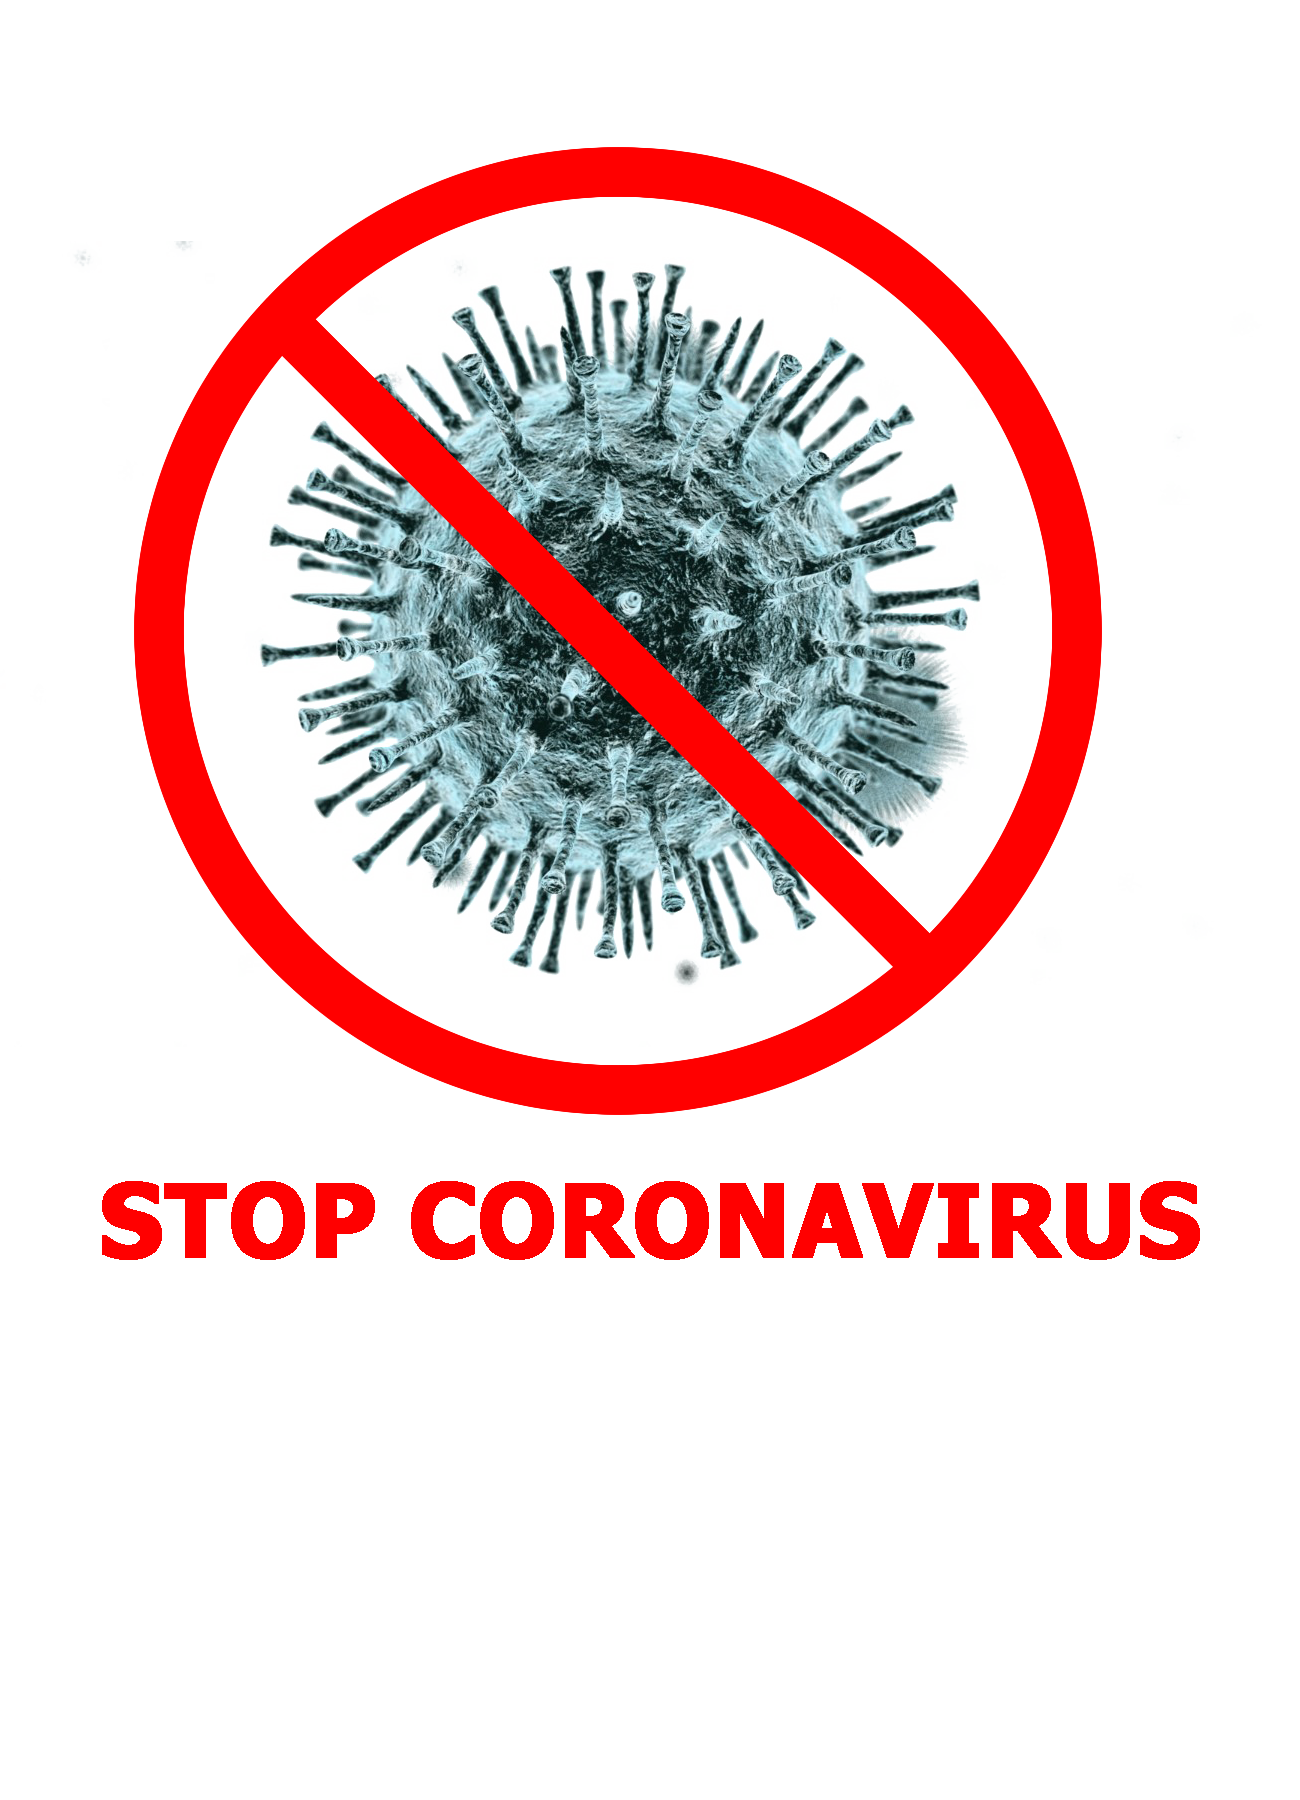 หยุดไวรัสคราวน์ตัวใหม่!